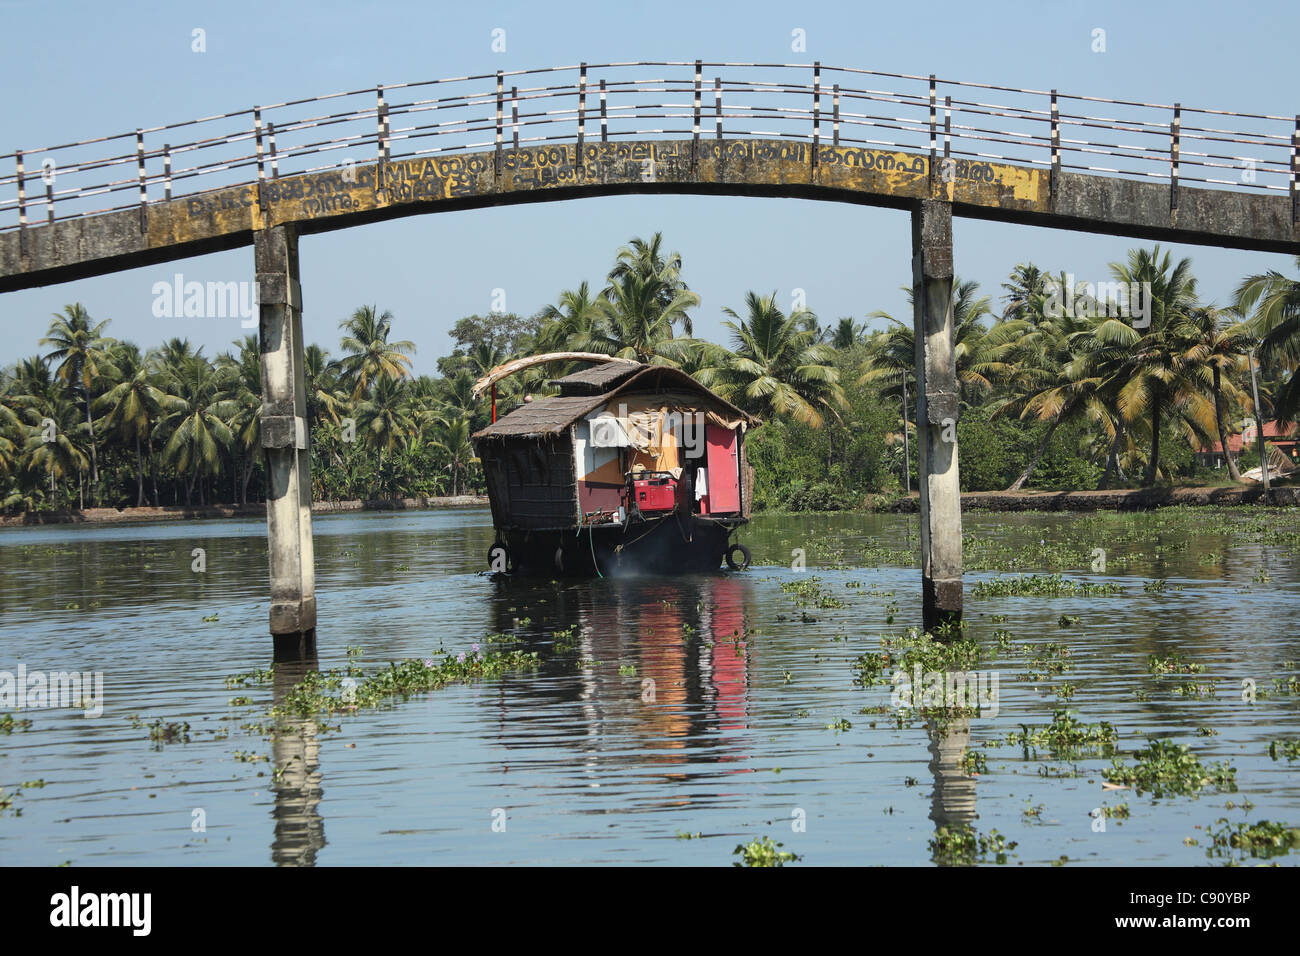 Kettuvallam sono un genere distintivo della grande barca si trovano nelle acque intorno a Cochin. Ci sono ancora barche da lavoro sul Foto Stock